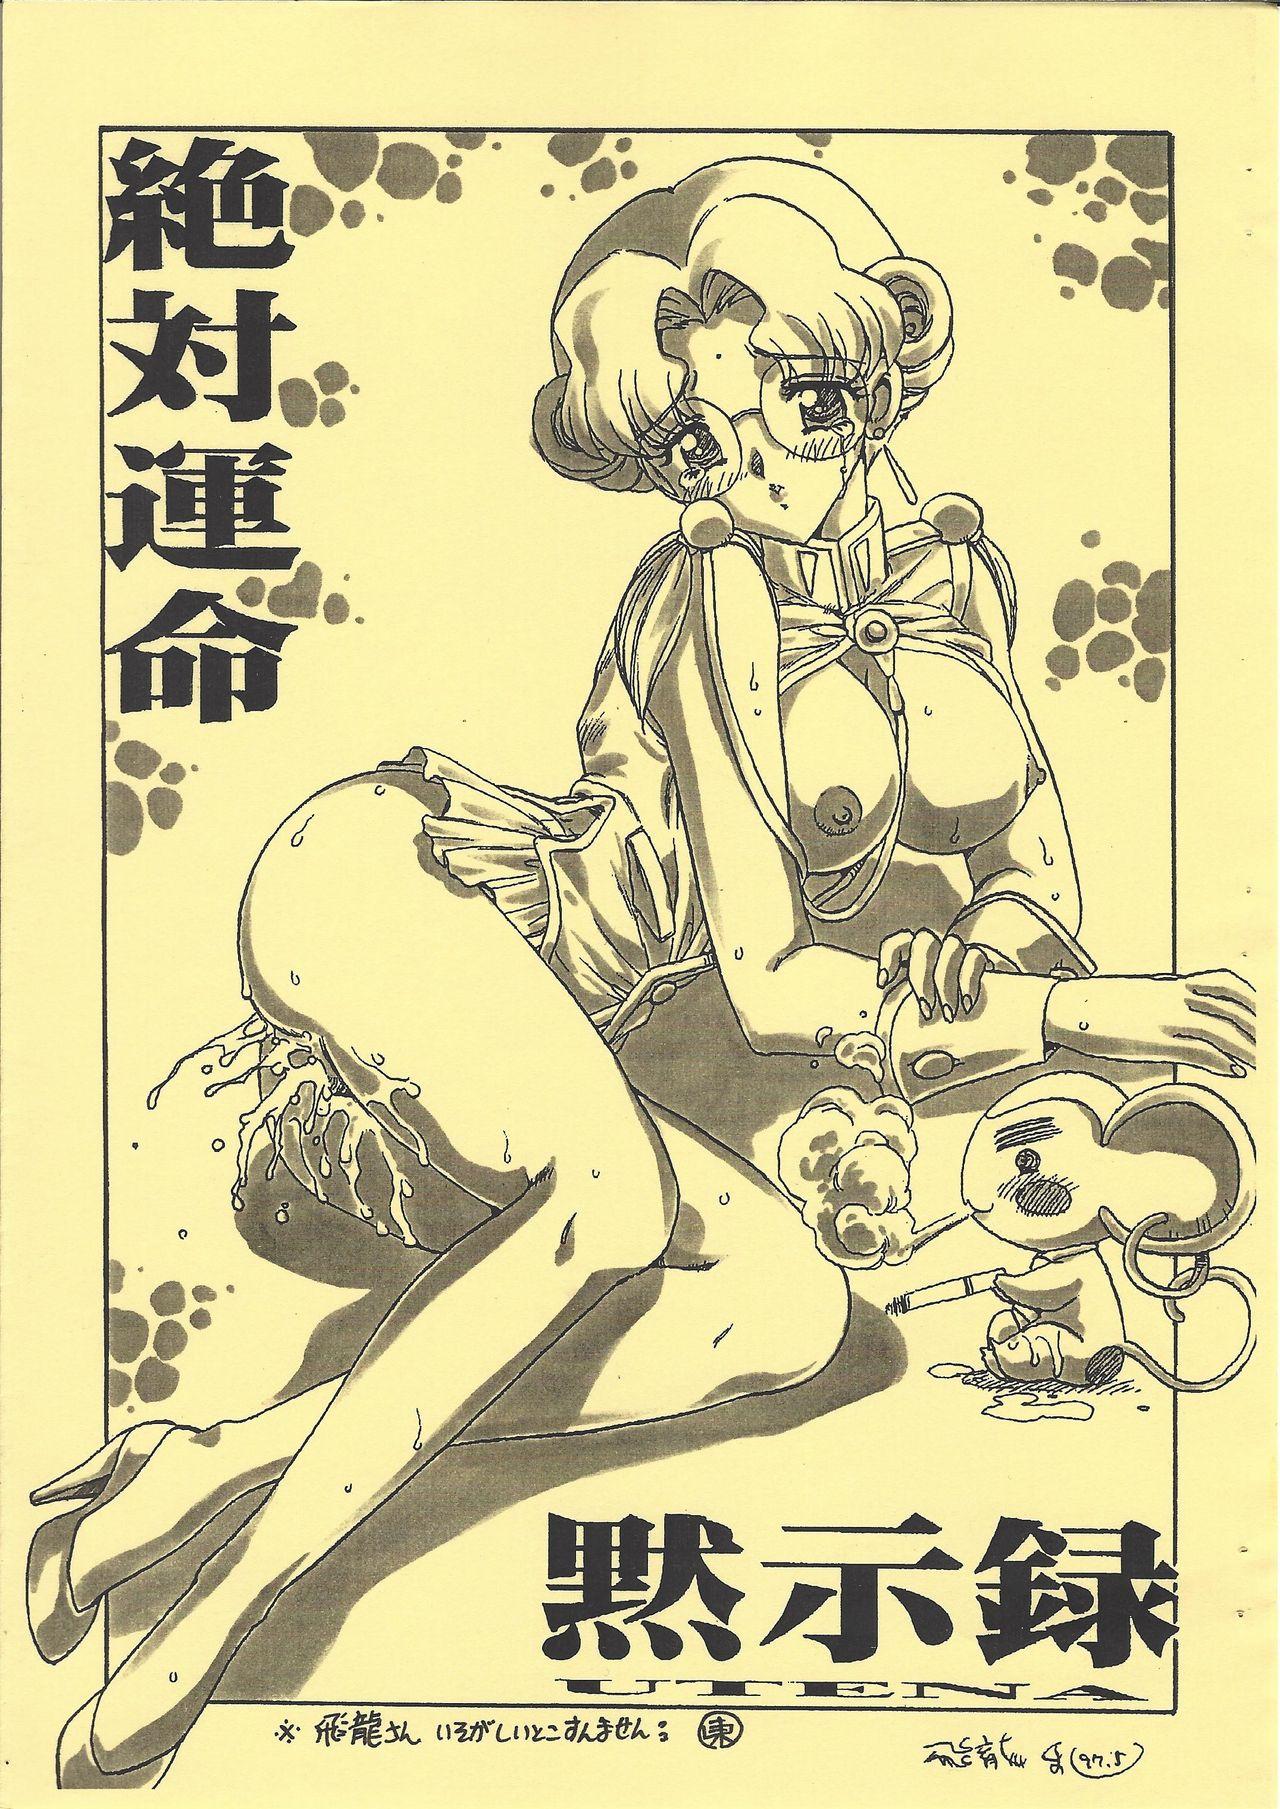 Gay Brownhair Shinpi no Sekai Taisen - El hazard Sakura taisen | sakura wars Revolutionary girl utena | shoujo kakumei utena Sex Toy - Picture 3